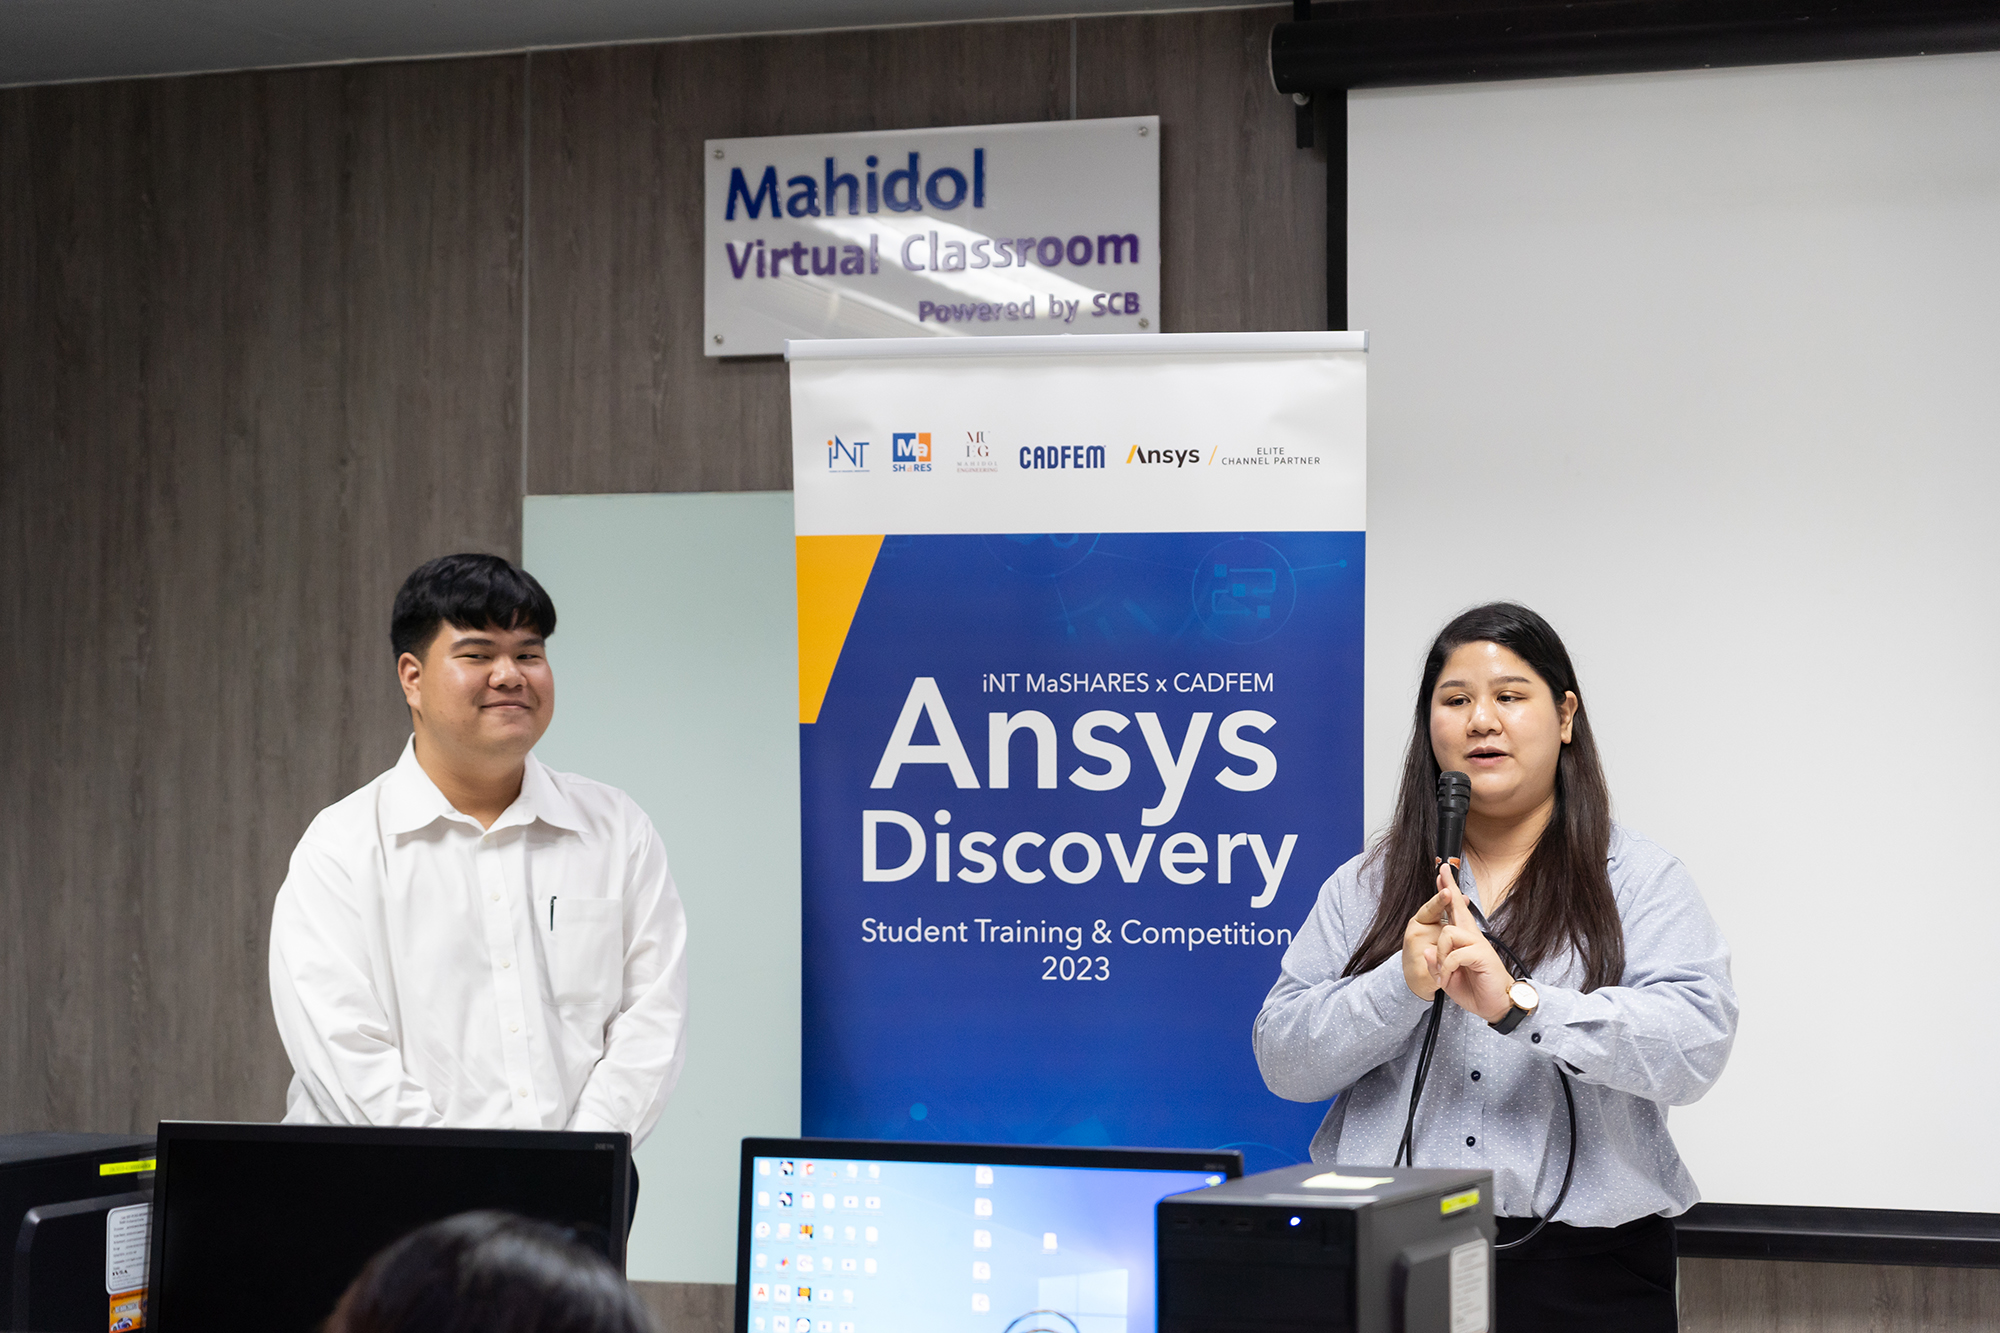 สถาบันบริหารจัดการเทคโนโลยีและนวัตกรรม (iNT) ร่วมกับ คณะวิศวกรรมศาสตร์ ม.มหิดล และ บริษัท แคดเฟ็ม จำกัด (CADFEM) จัดกิจกรรม Workshop และแข่งขัน “Ansys Discovery Student Training & Competition 2023” เพื่อเรียนรู้ สร้างสรรค์การออกแบบเกี่ยวกับ 3D และ Simulation ณ ห้อง Computer Laboratory คณะวิศวกรรมศาสตร์ ม.มหิดล ศาลายา